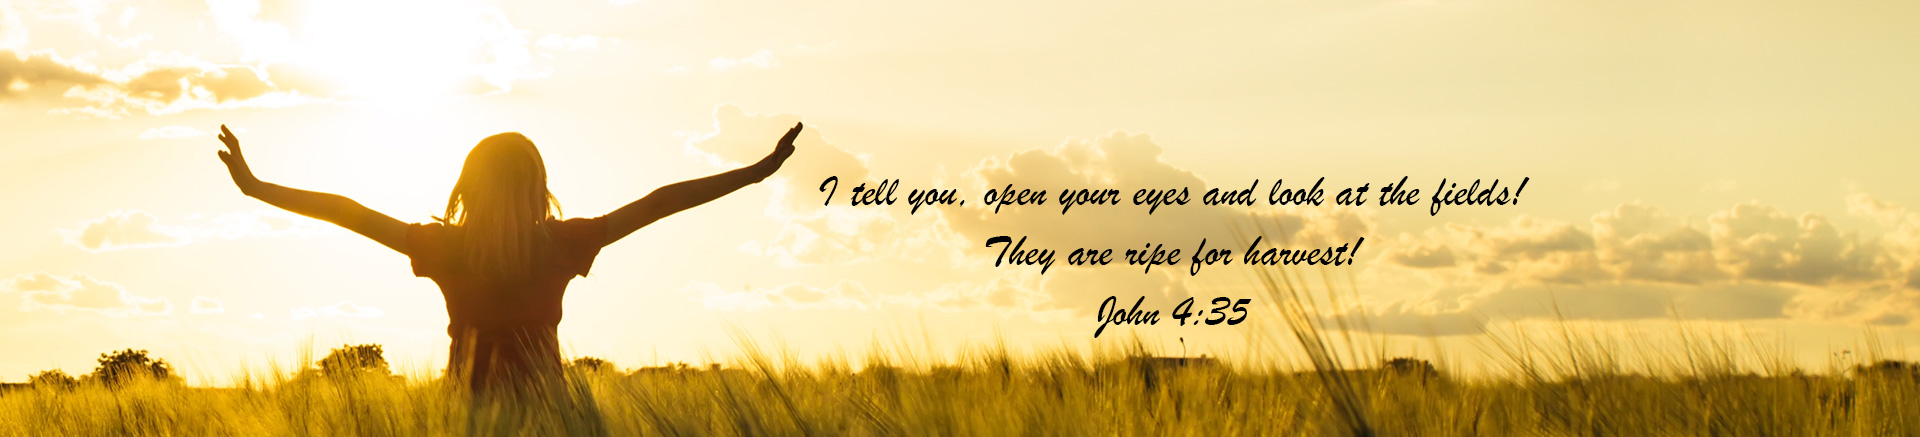 John 4:35